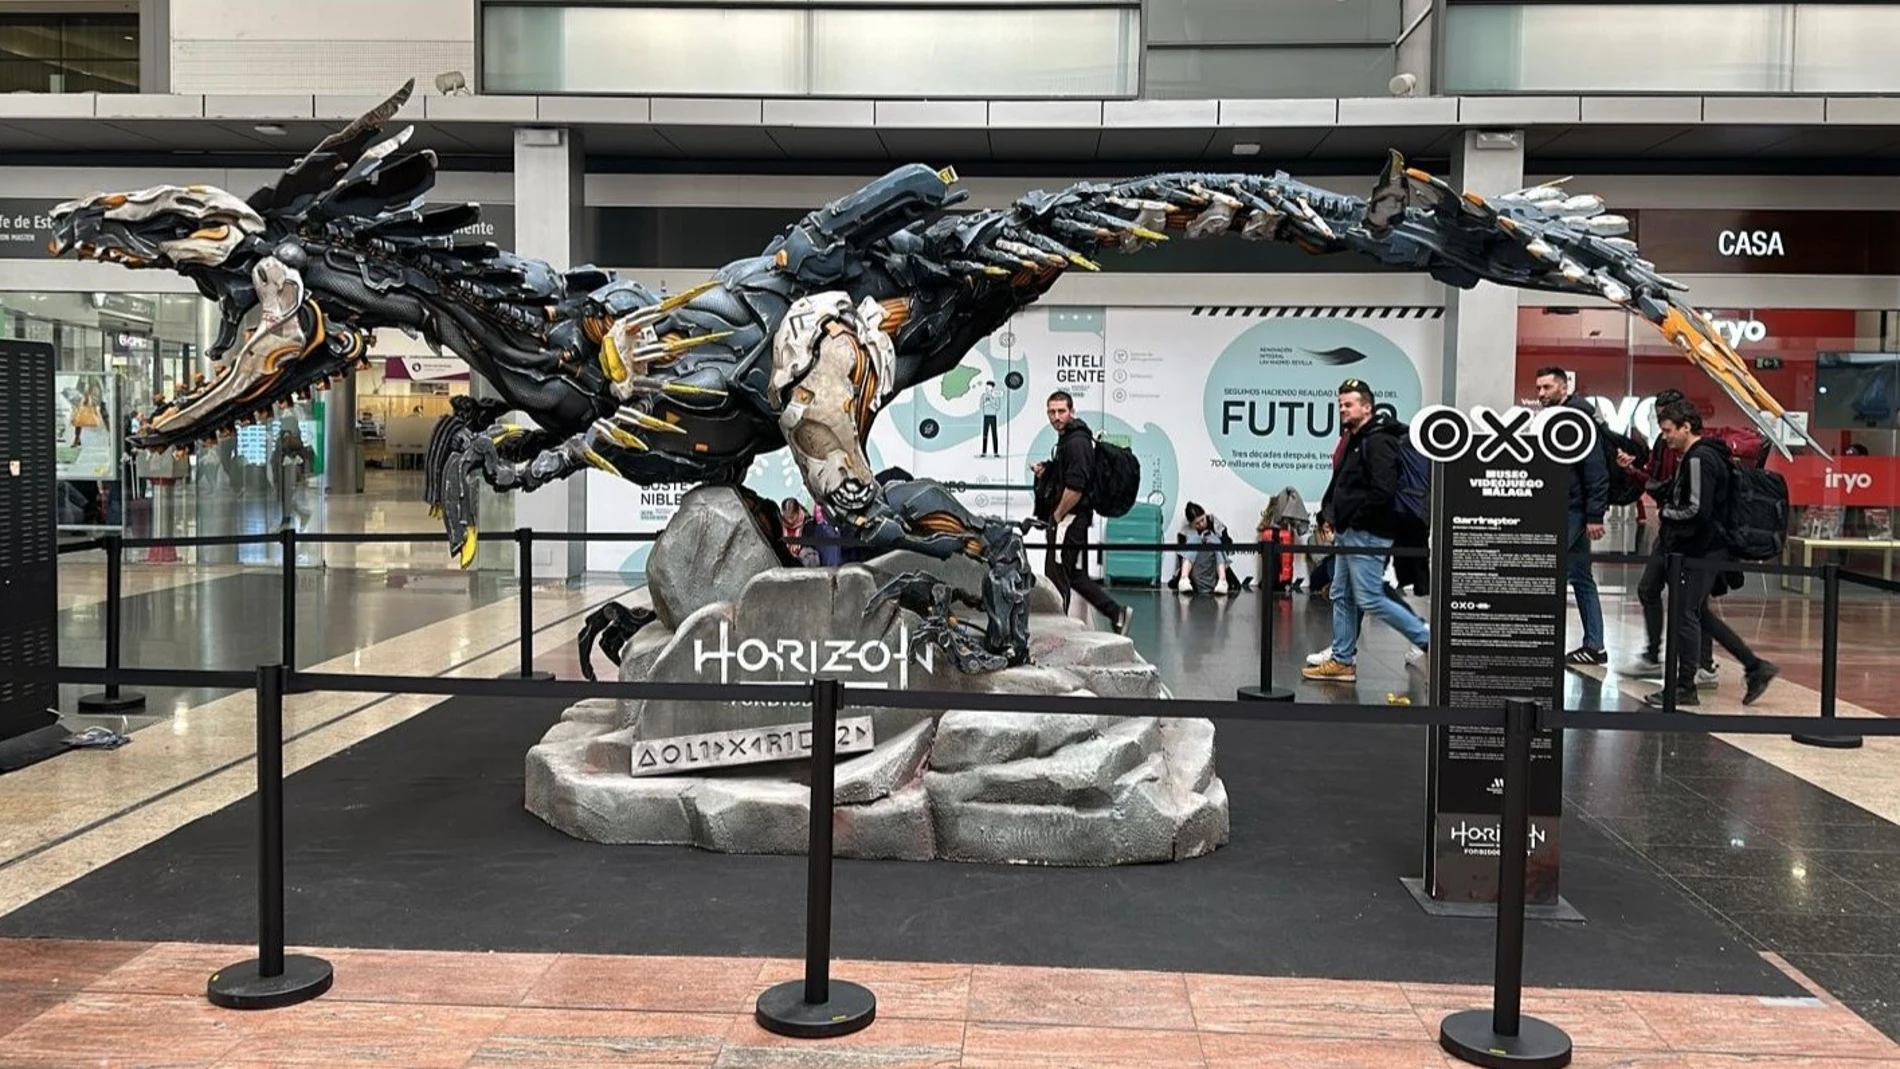 La imponente figura de 6 metros basada en el videojuego de PlayStation, toma el Centro Comercial Vialia Málaga durante febrero y marzo con sorteos y regalos